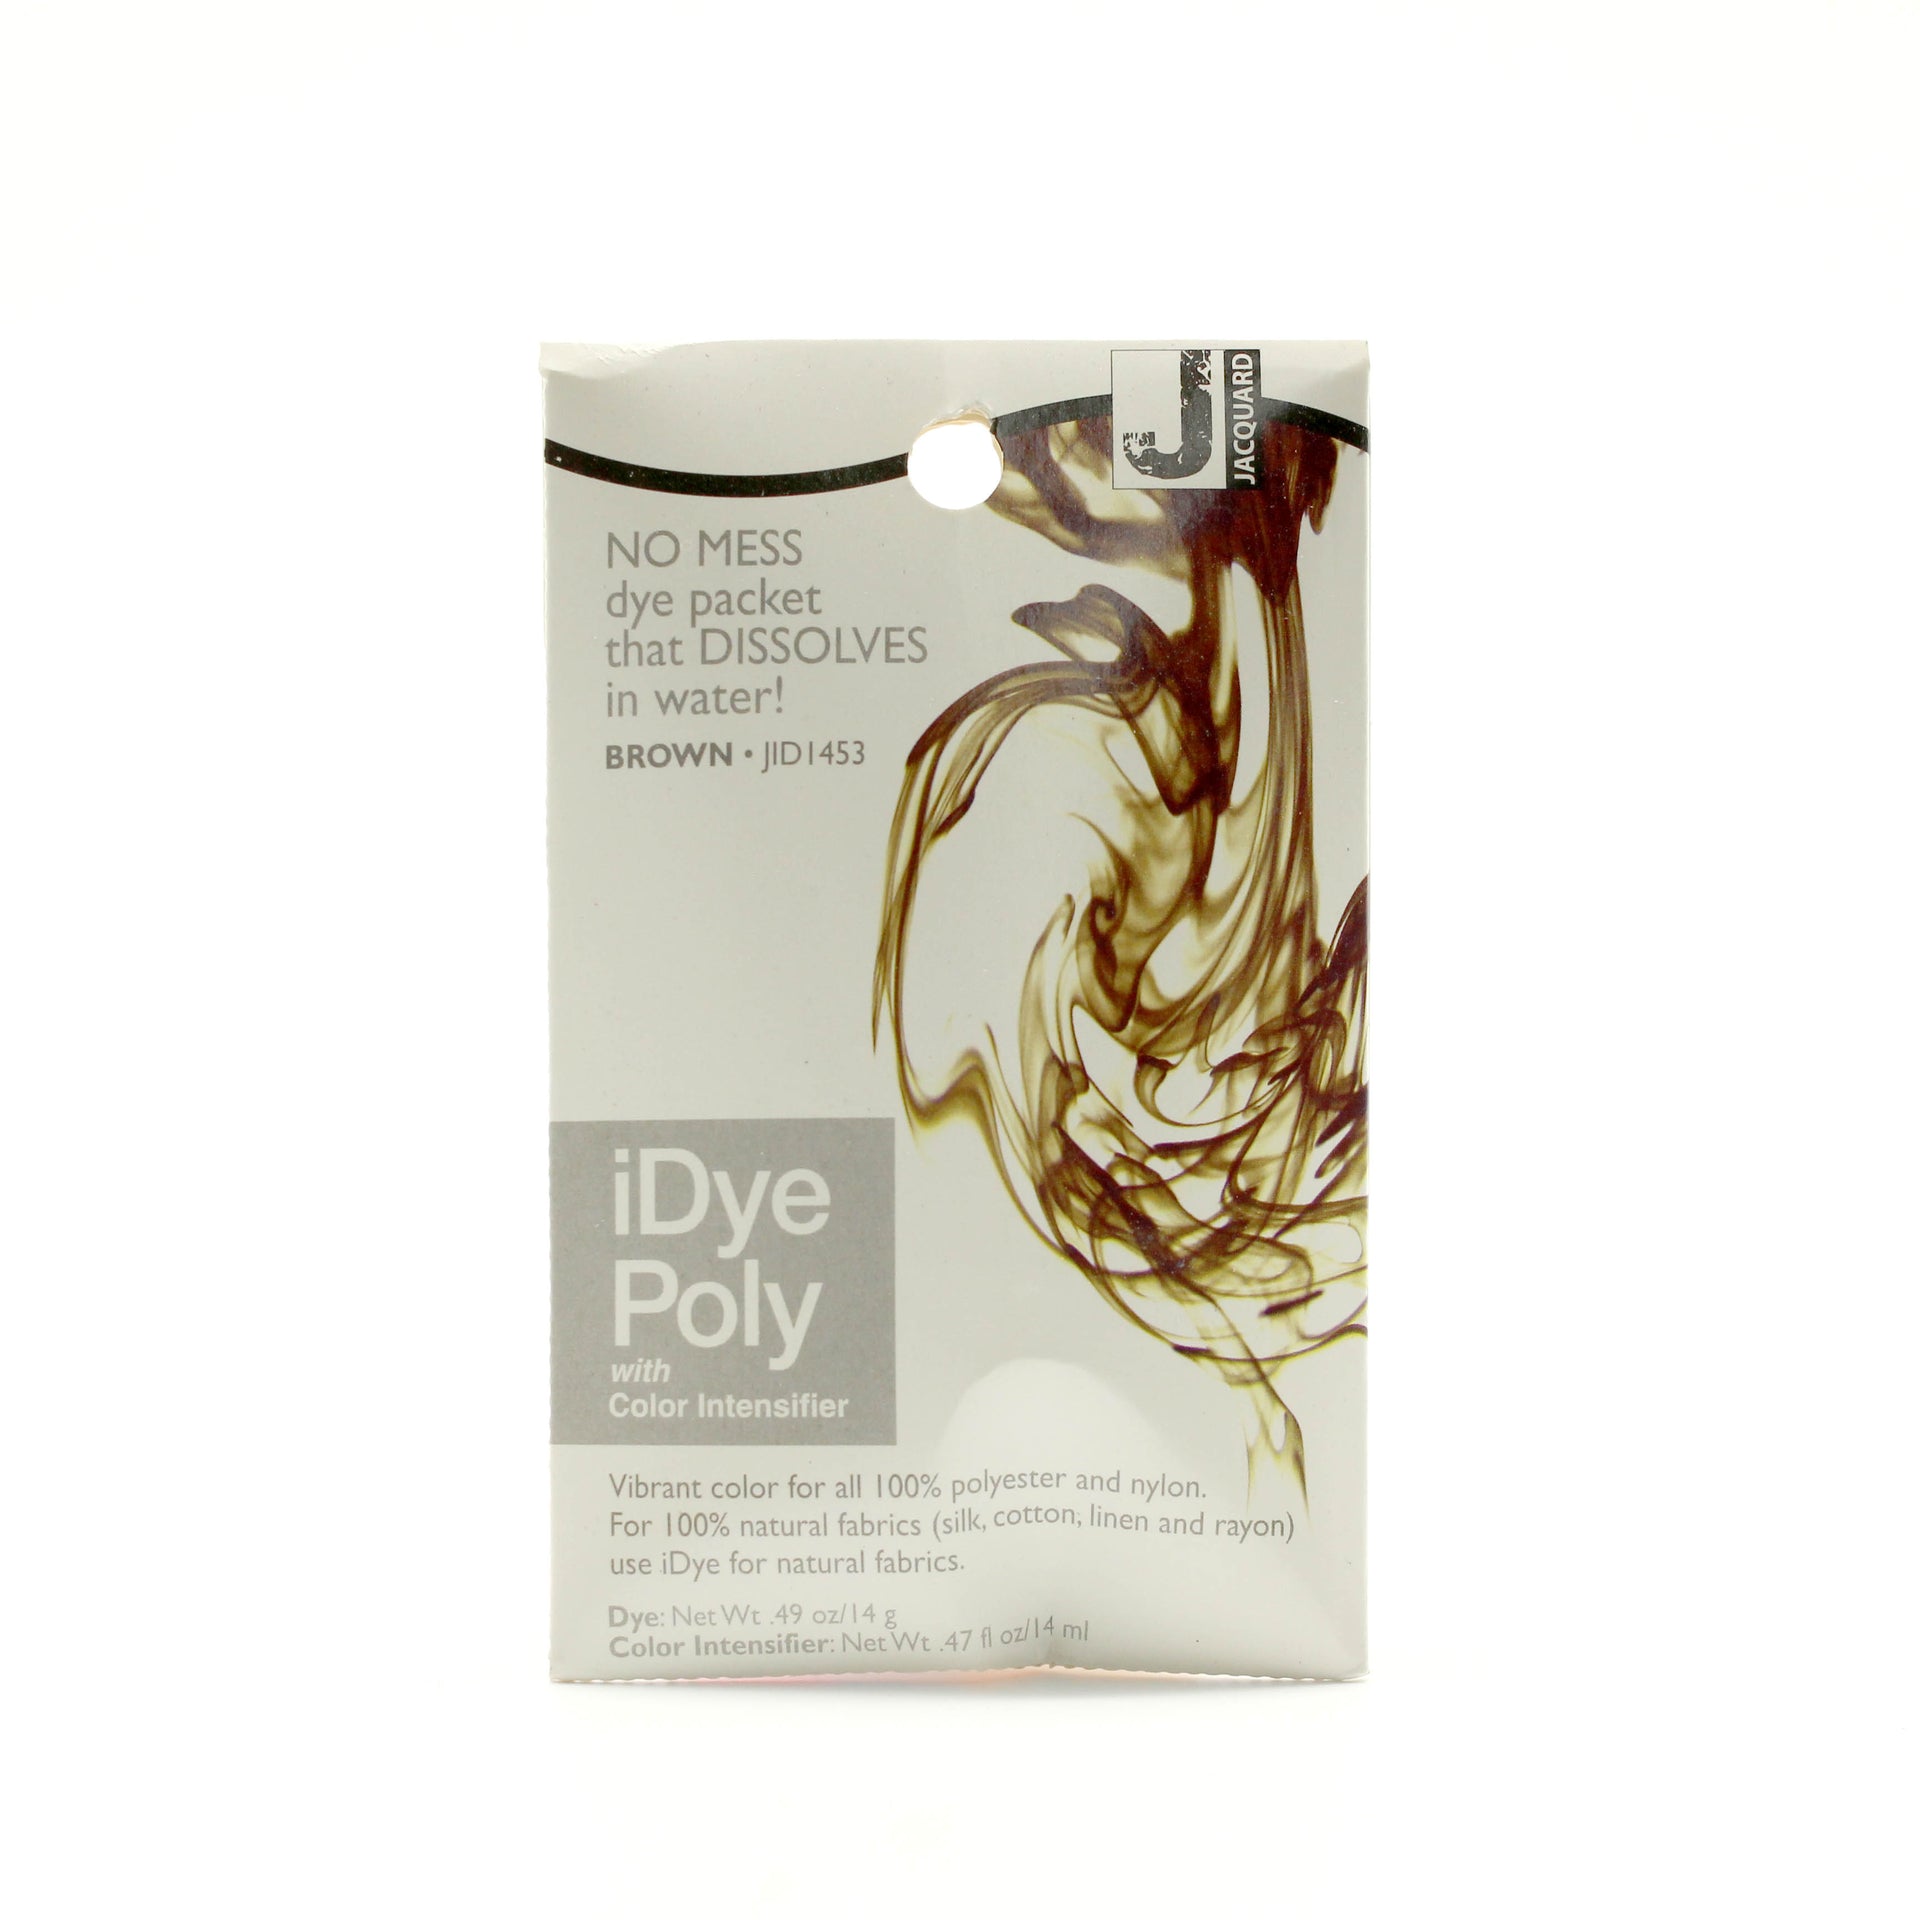 Brown iDye 14gm - Dyes - Jacquard I Dye Fabric Dyeing